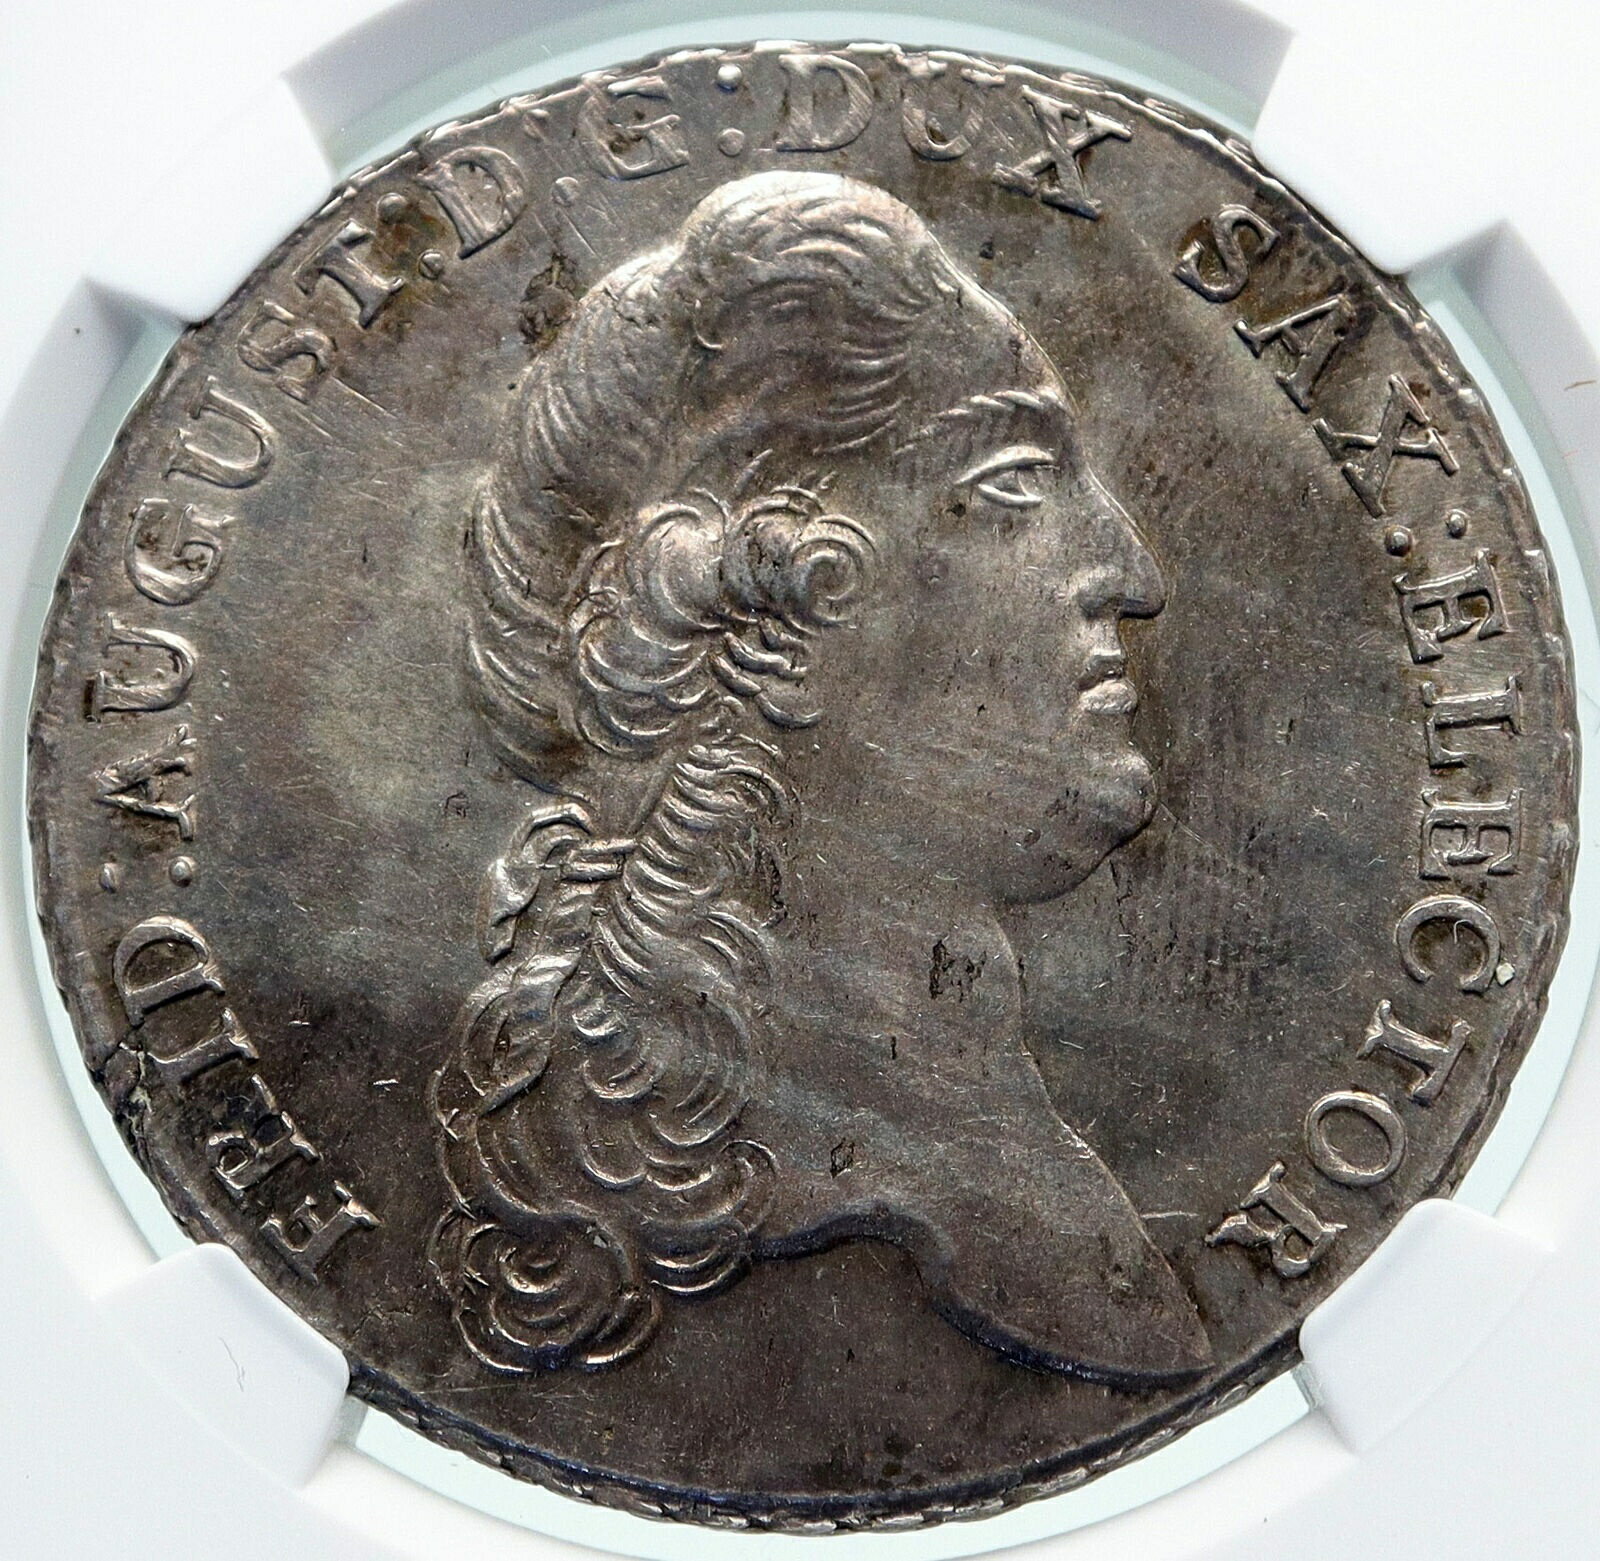  アンティークコイン 銀貨 1789 GERMANY German SAXONY Elector Fred Augustus SILVER Thaler Coin NGC i86551  #sct-wr-011201-16366